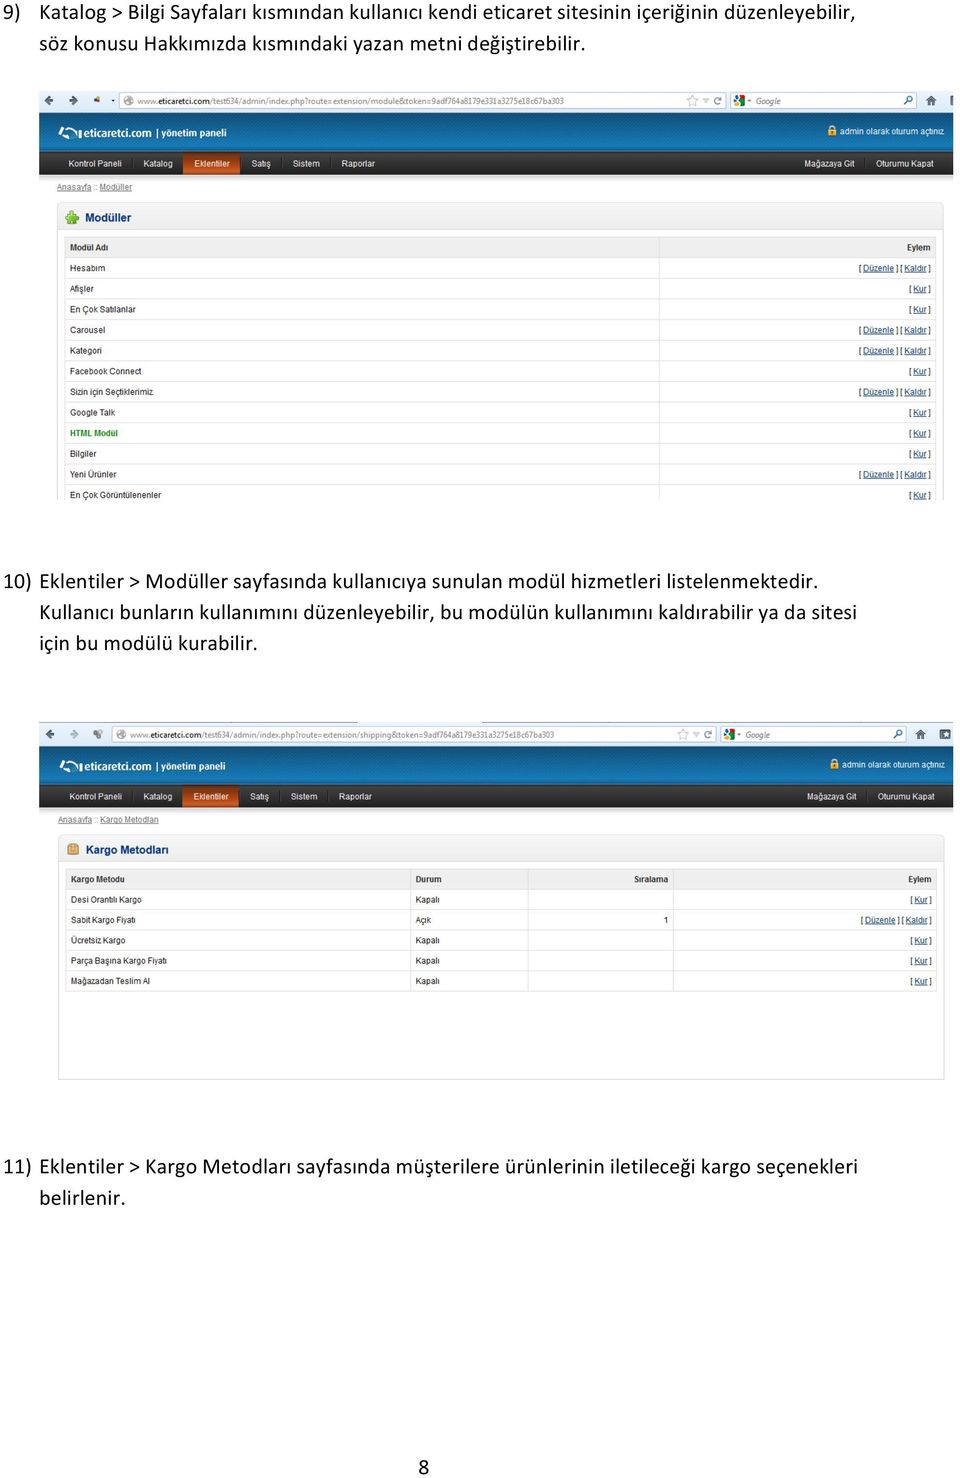 10) Eklentiler > Modüller sayfasında kullanıcıya sunulan modül hizmetleri listelenmektedir.